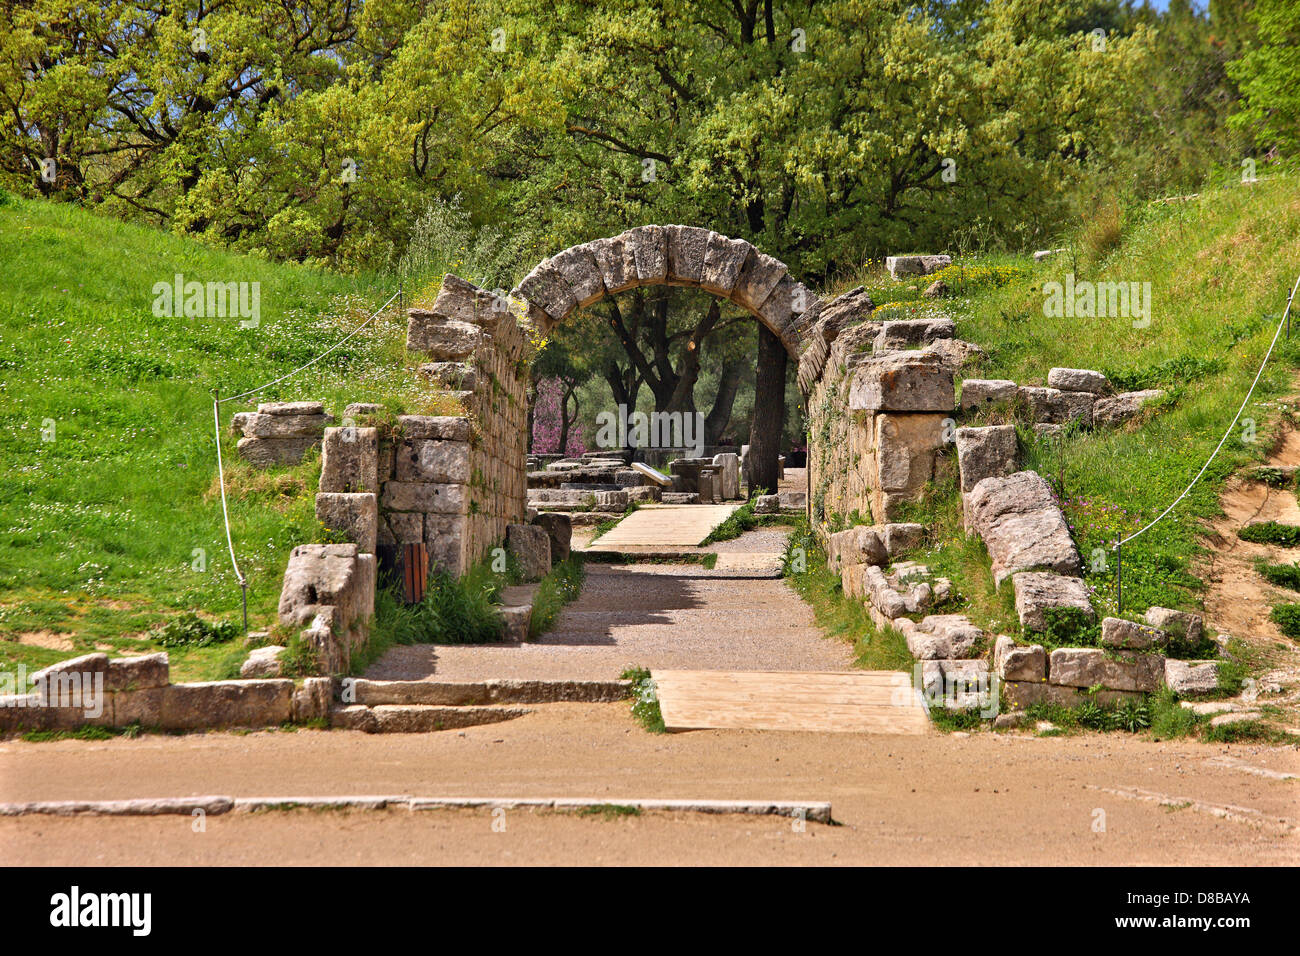 La "cripta", la entrada al estadio de la antigua Olimpia, cuna de los Juegos Olímpicos, Ilia, Peloponeso, Grecia. Foto de stock